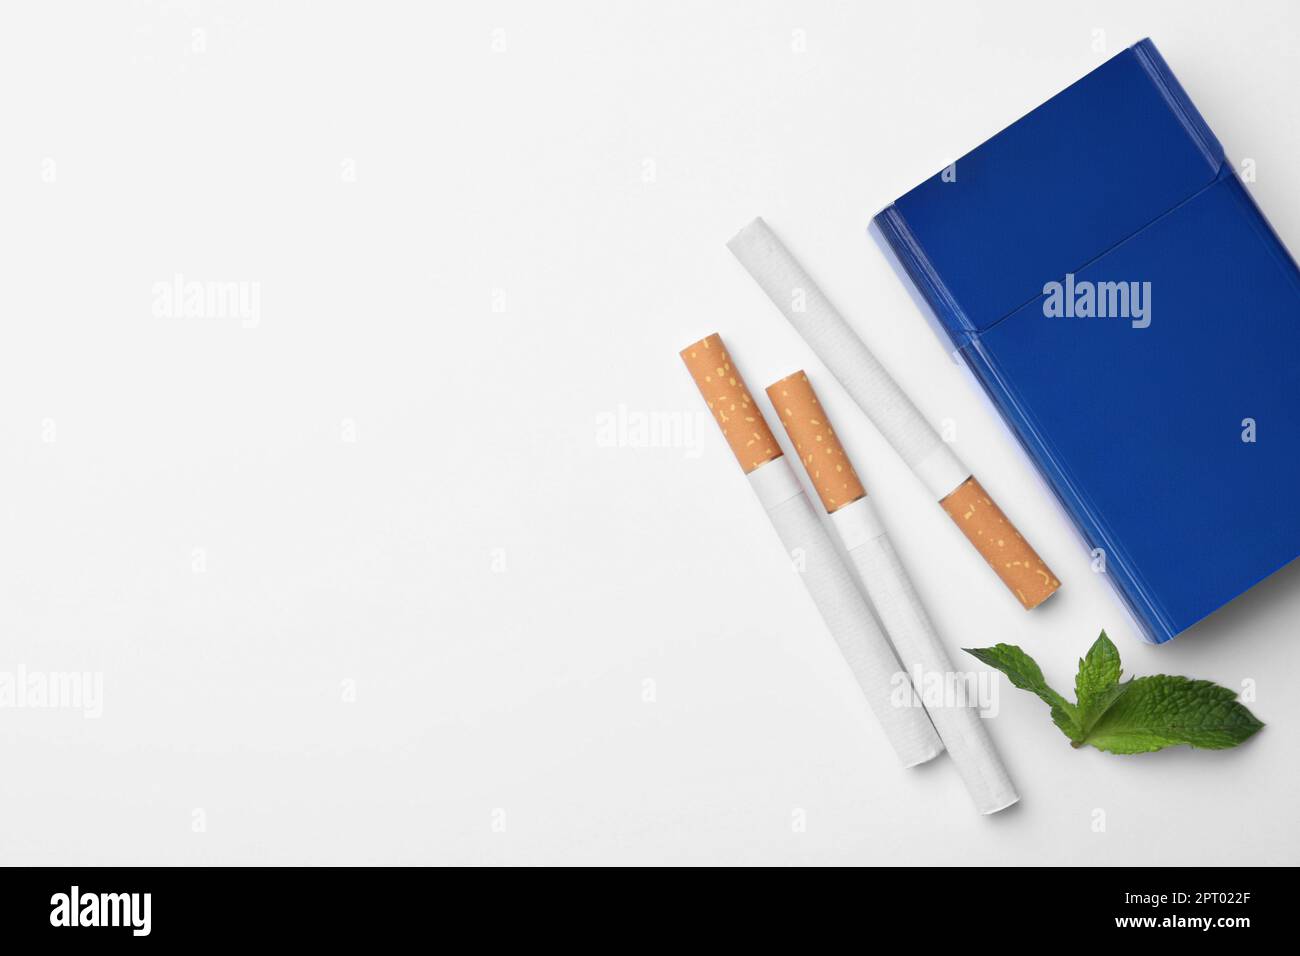 Cigarettes de menthol, paquet et menthe sur fond blanc, plat. Espace pour le texte Banque D'Images